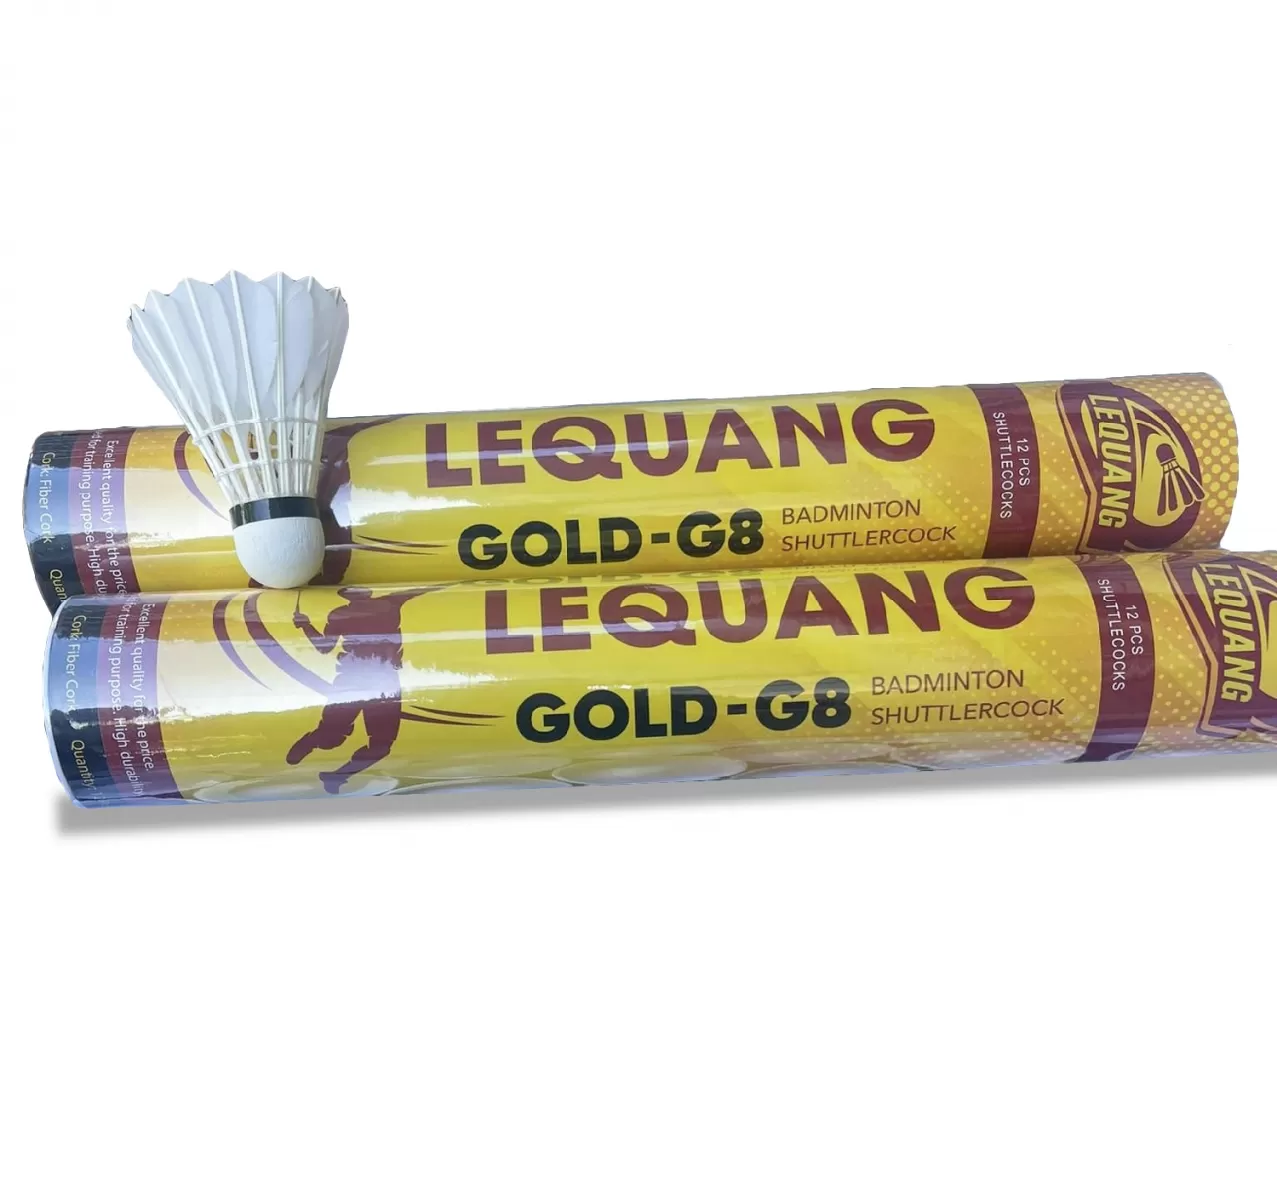 Ống Cầu Lông Lê Quang (Vàng) - Giá 1 ống cầu lông; 1 ống cầu lông bao nhiêu tiền?